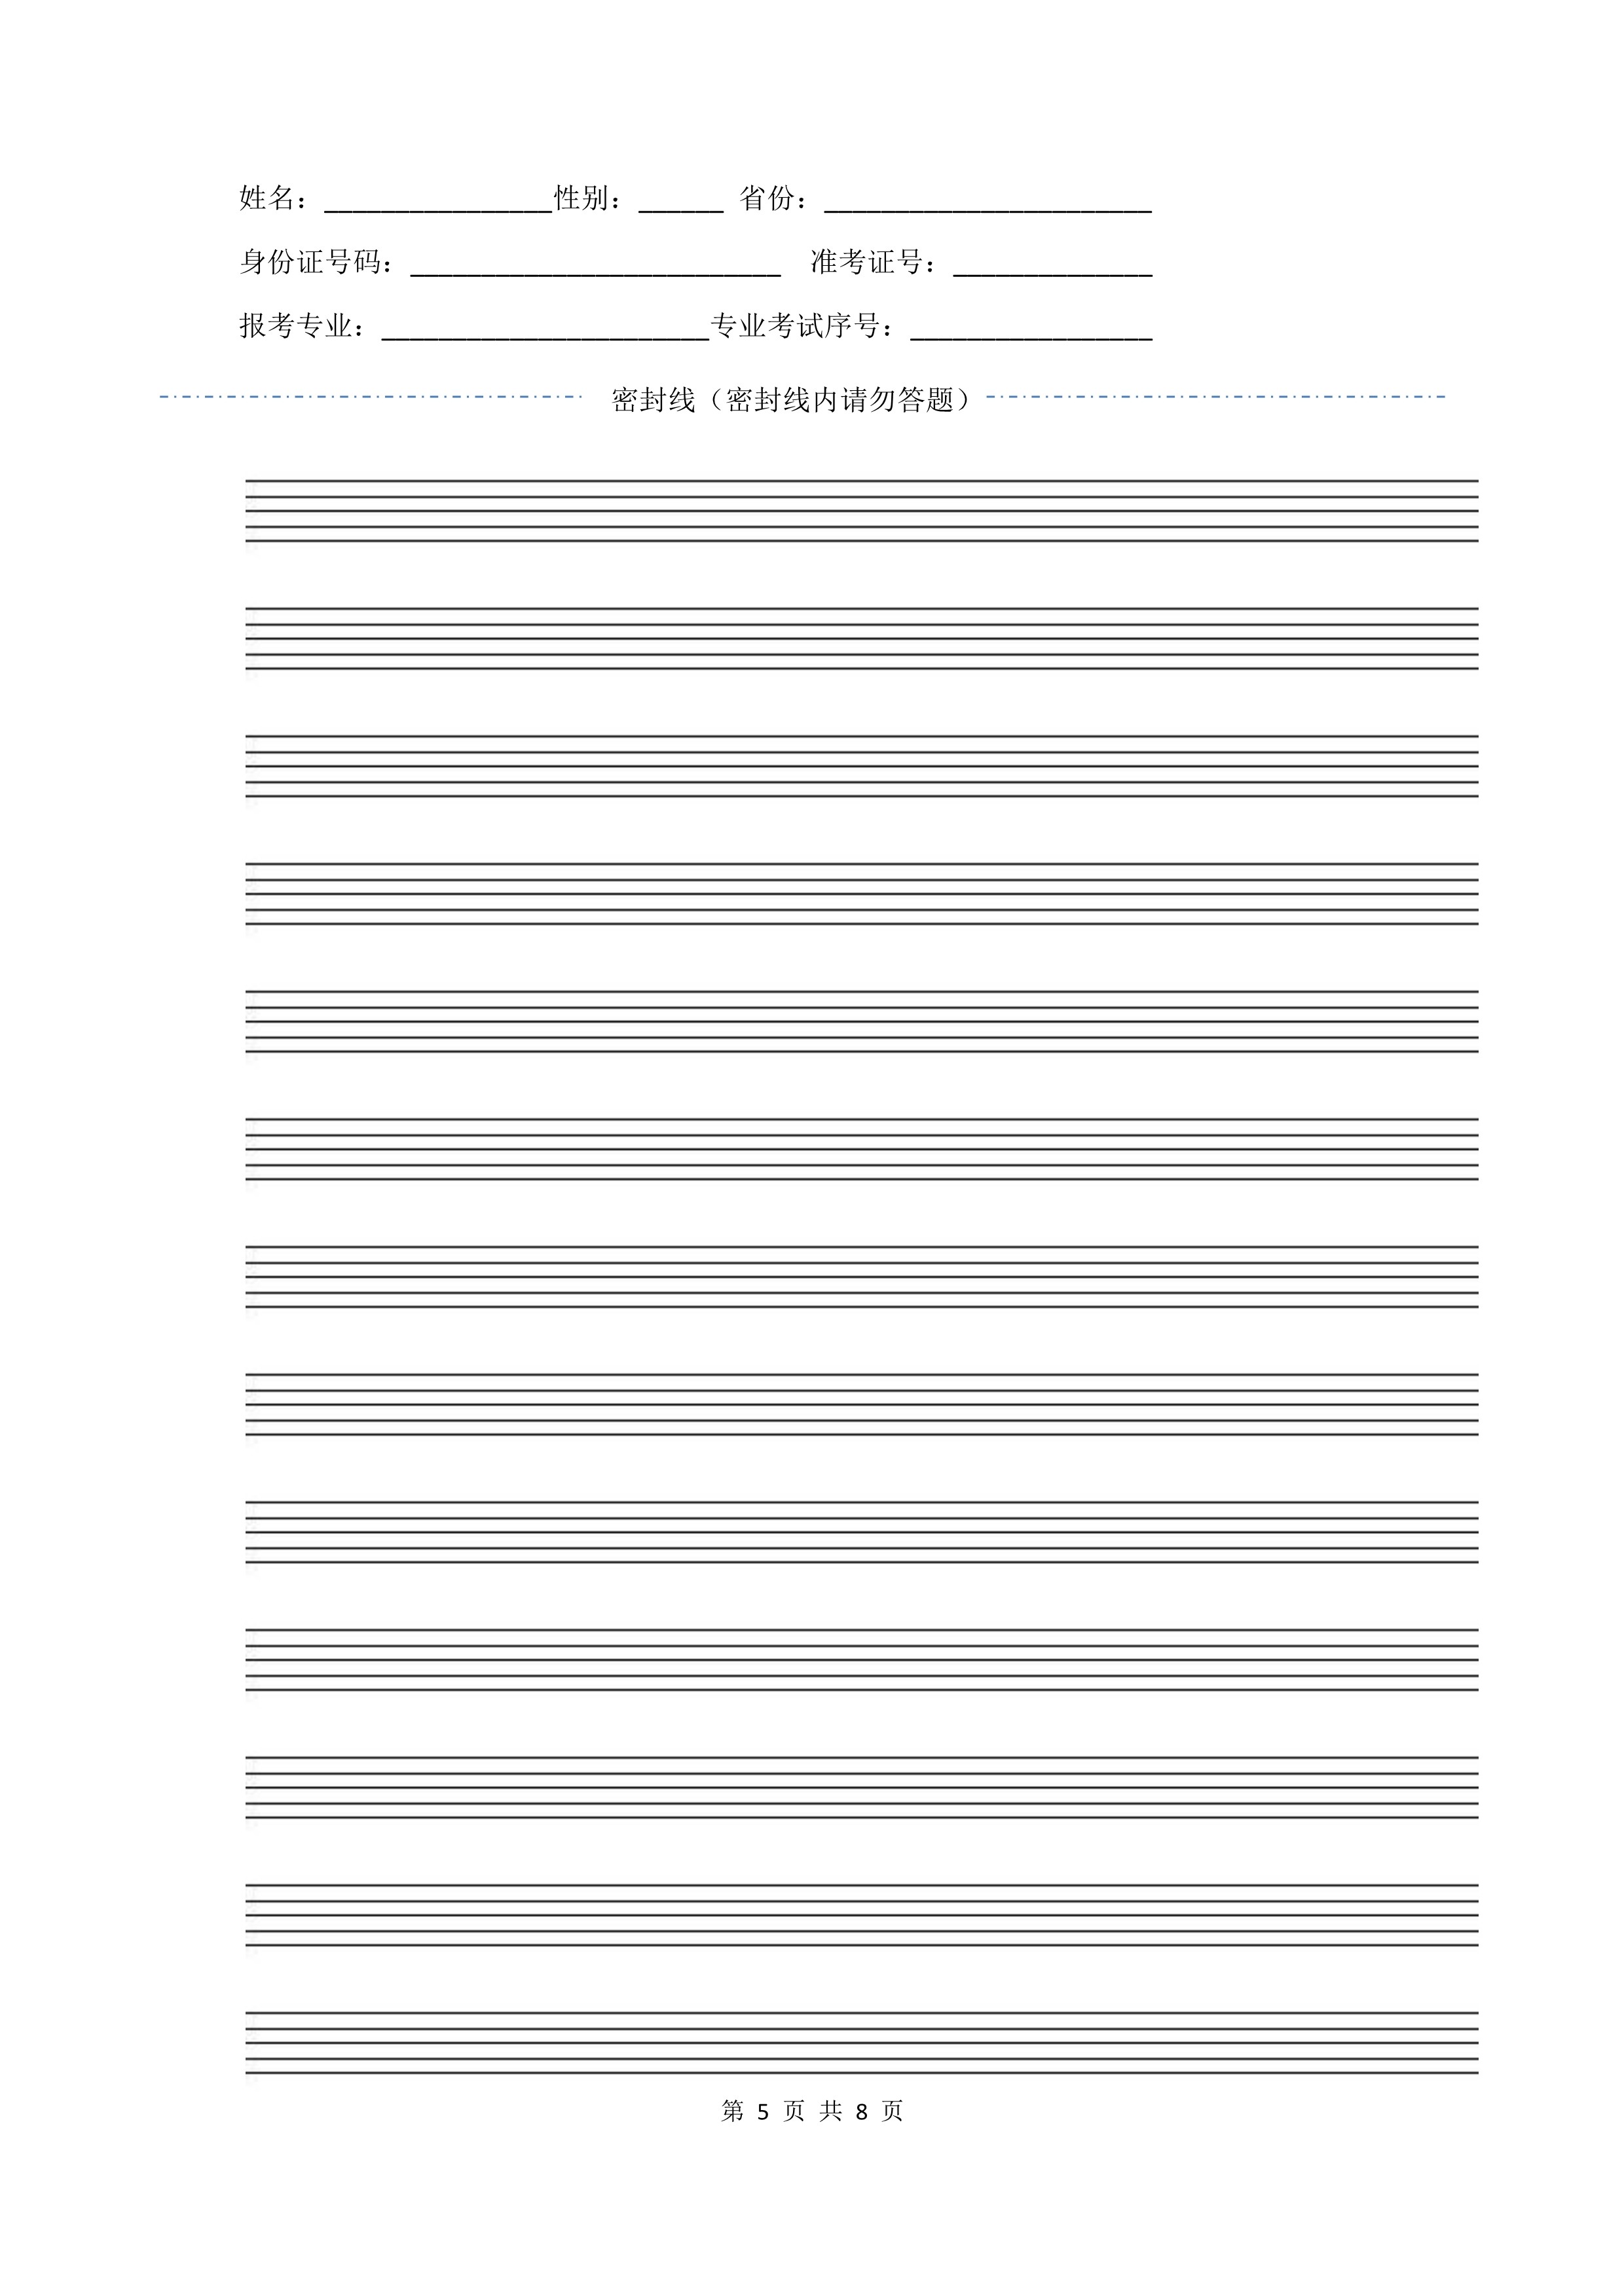 南京艺术学院2022年本科招生作曲与作曲技术理论、作曲与作曲技术理论（计算机作曲）专业《歌曲写作》科目考试答题纸及草稿纸_5.jpg